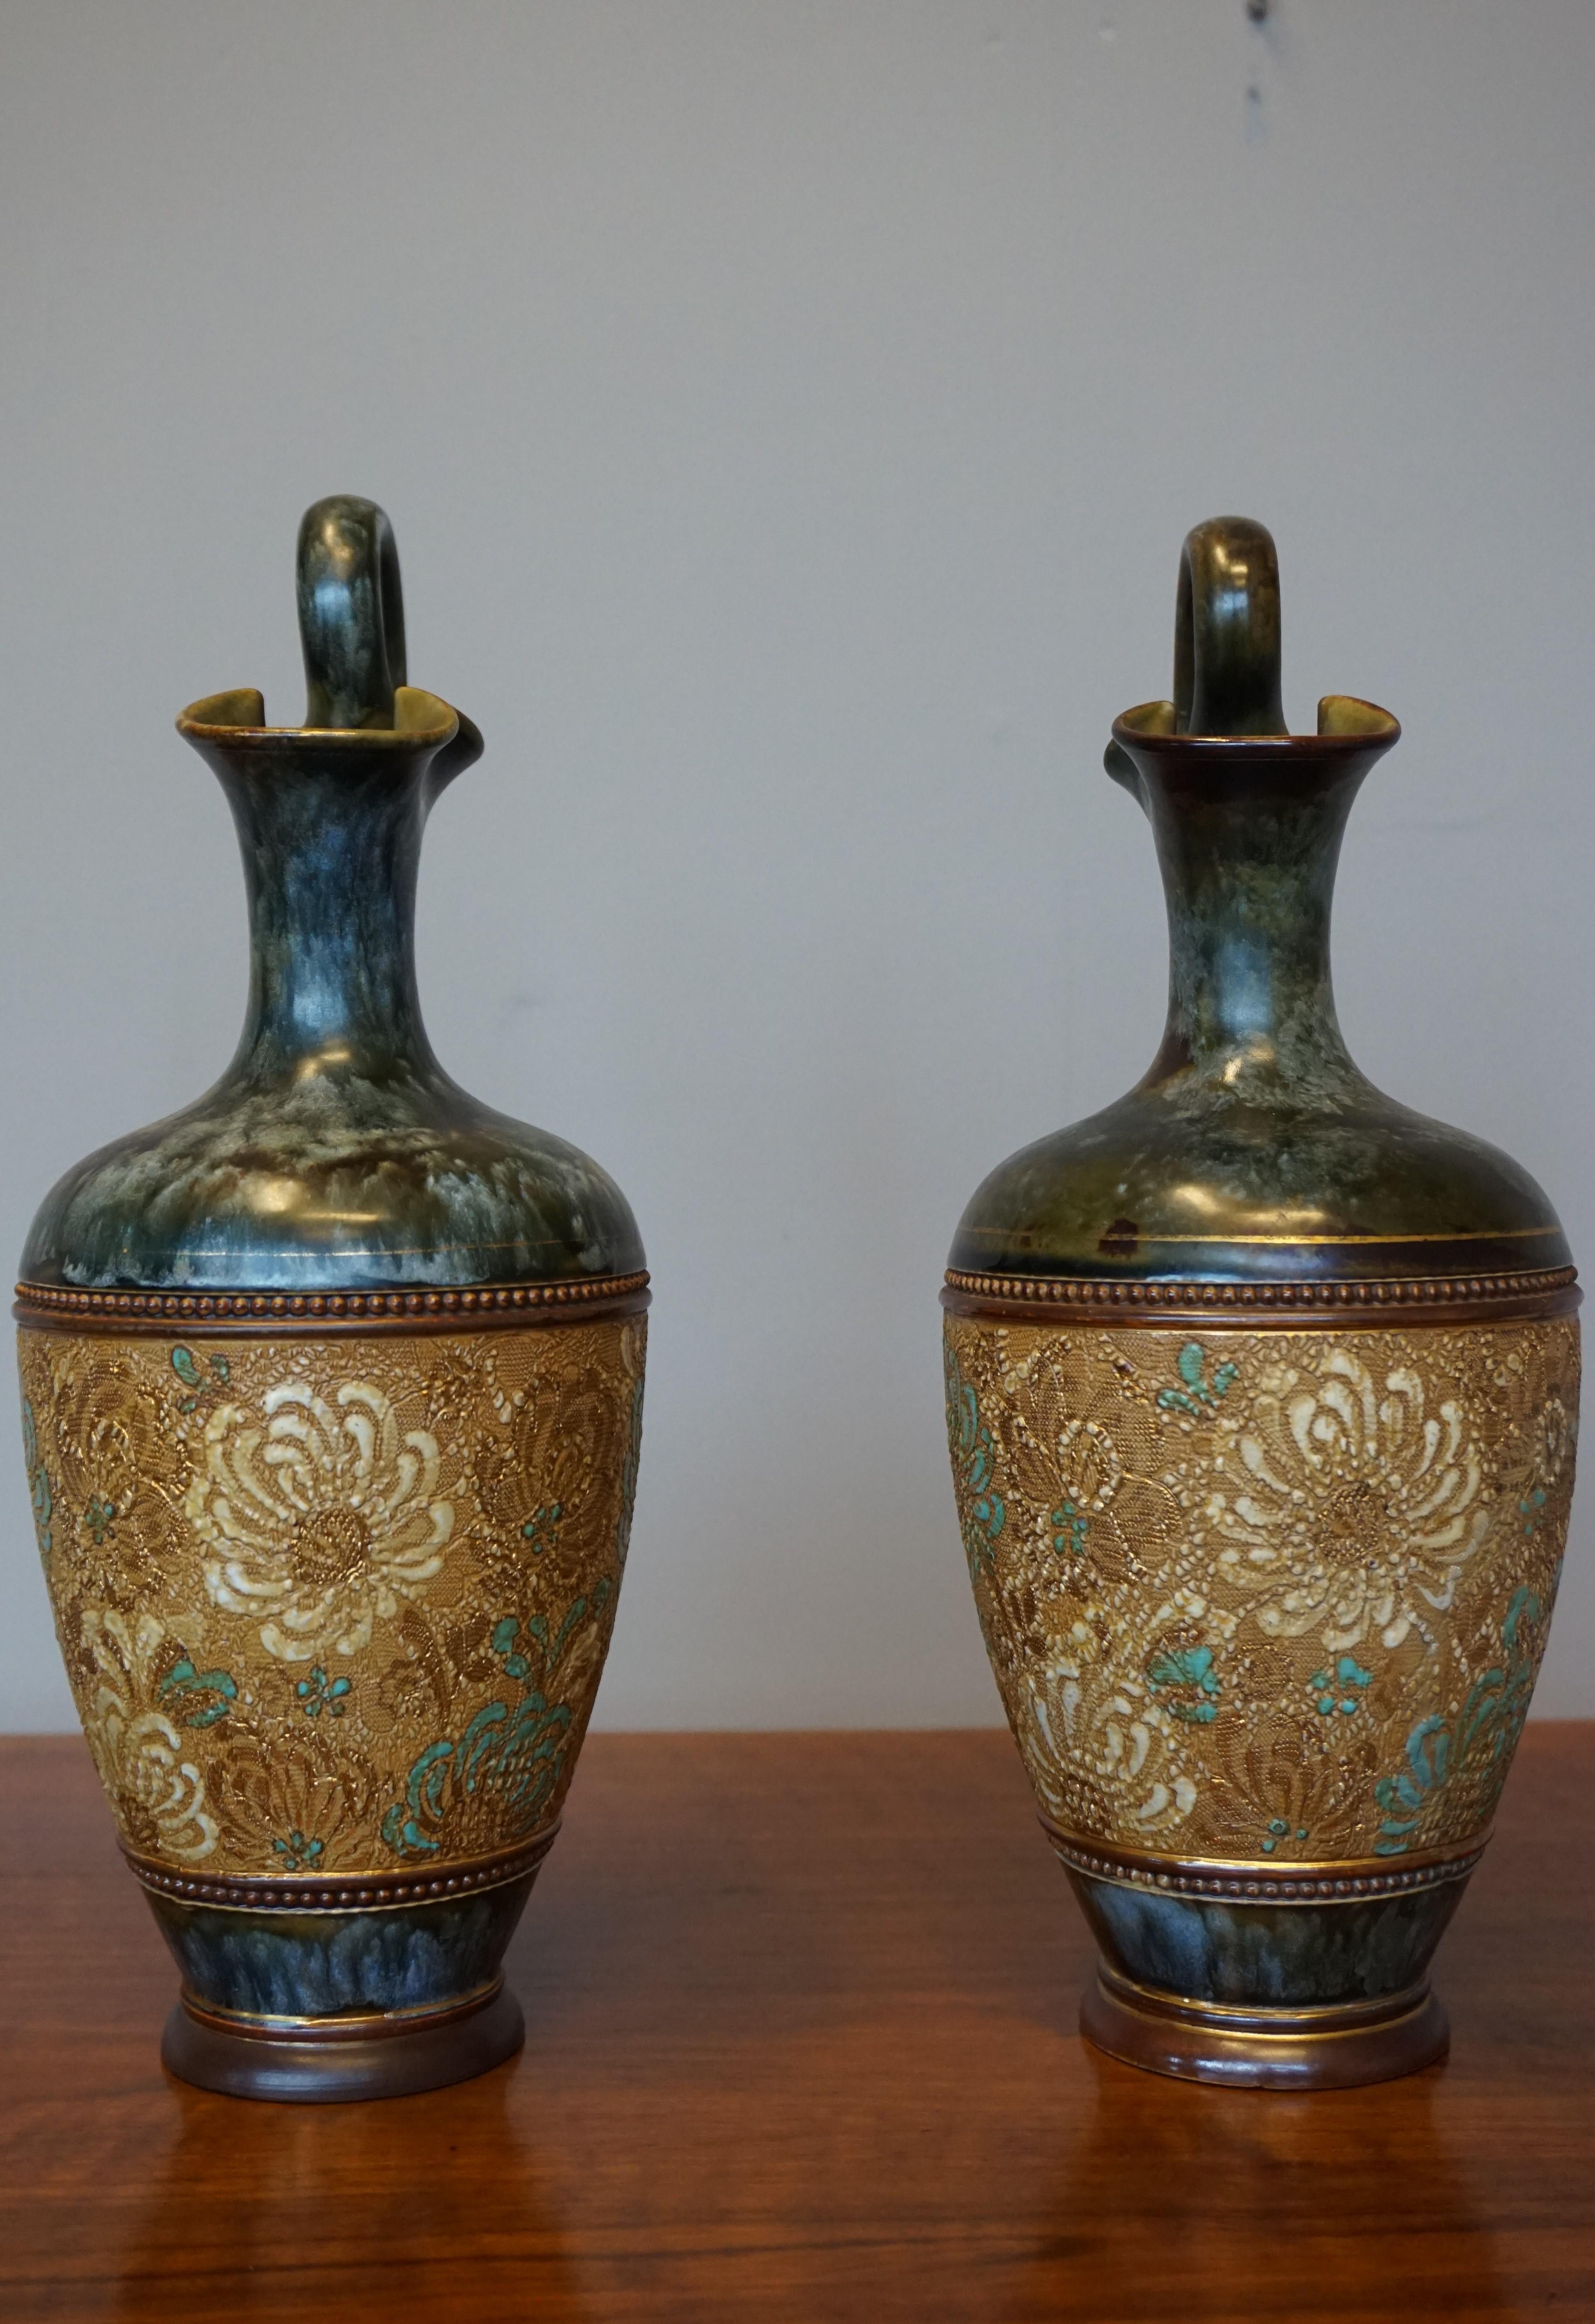 Rare Pair of Doulton Lambeth Vases with Striking Golden & Enameled Flower Decor For Sale 4